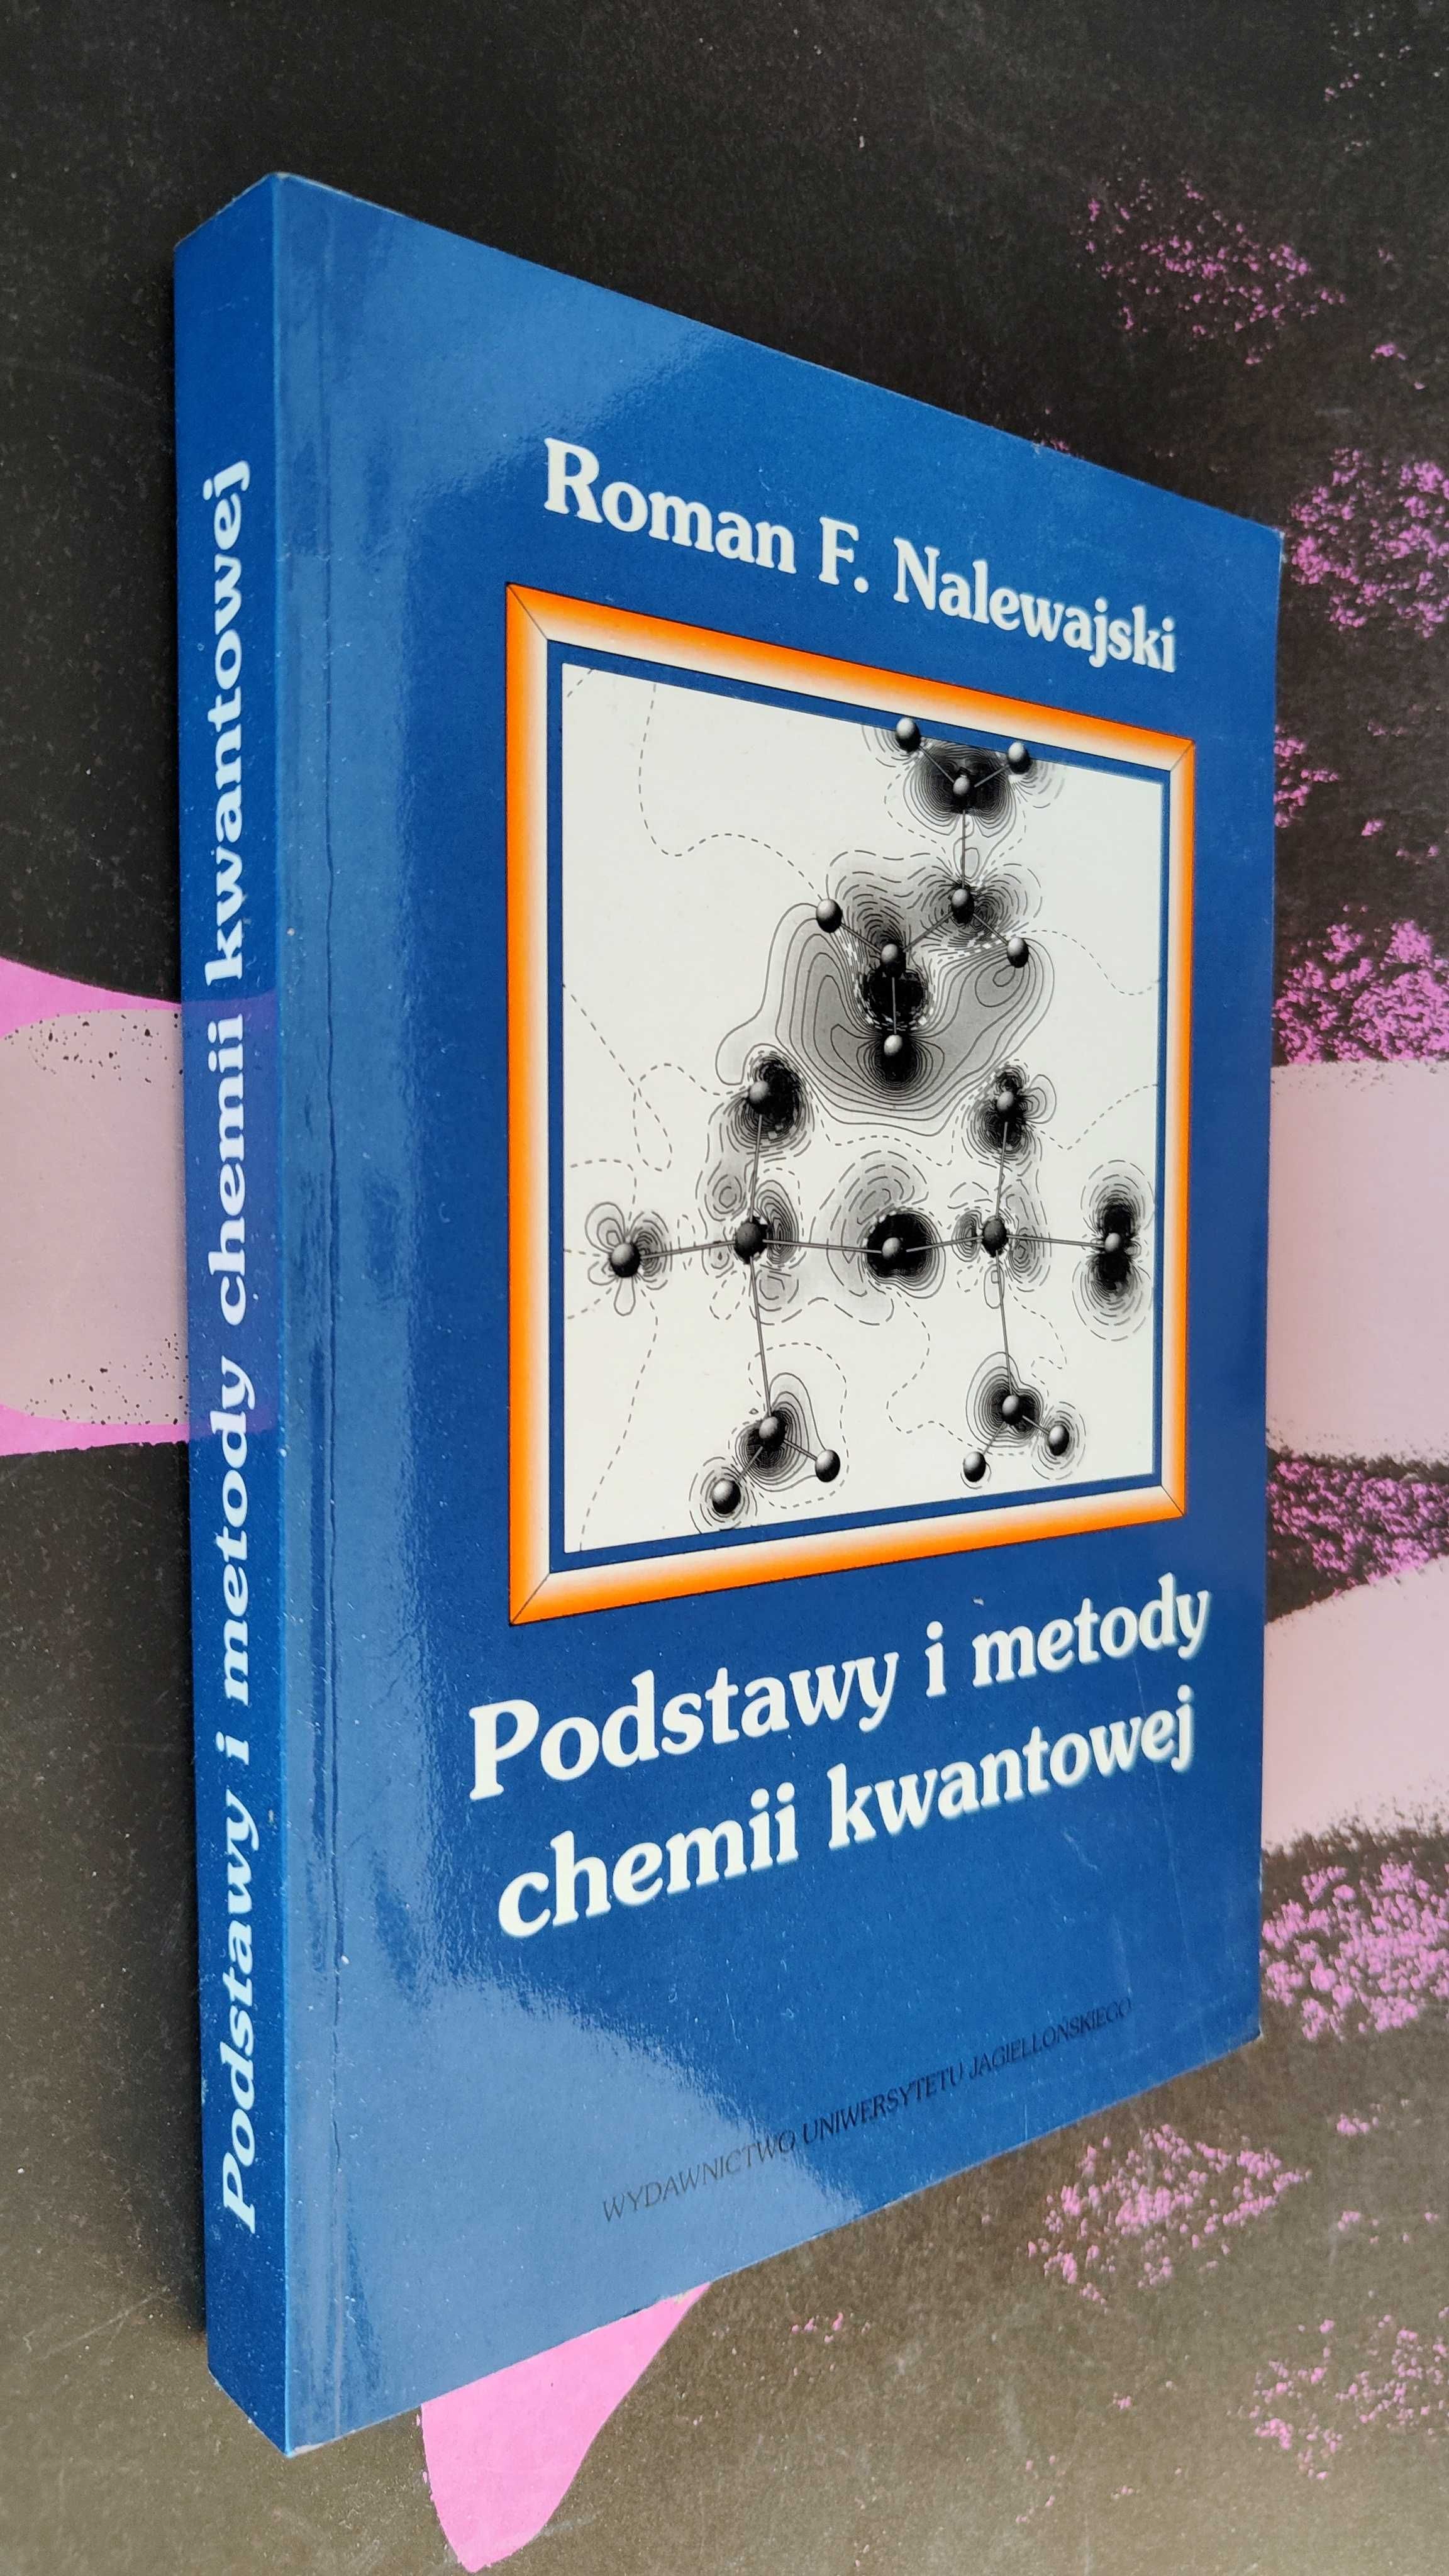 Roman F. Nalewajski - Podstawy i metody chemii kwantowej